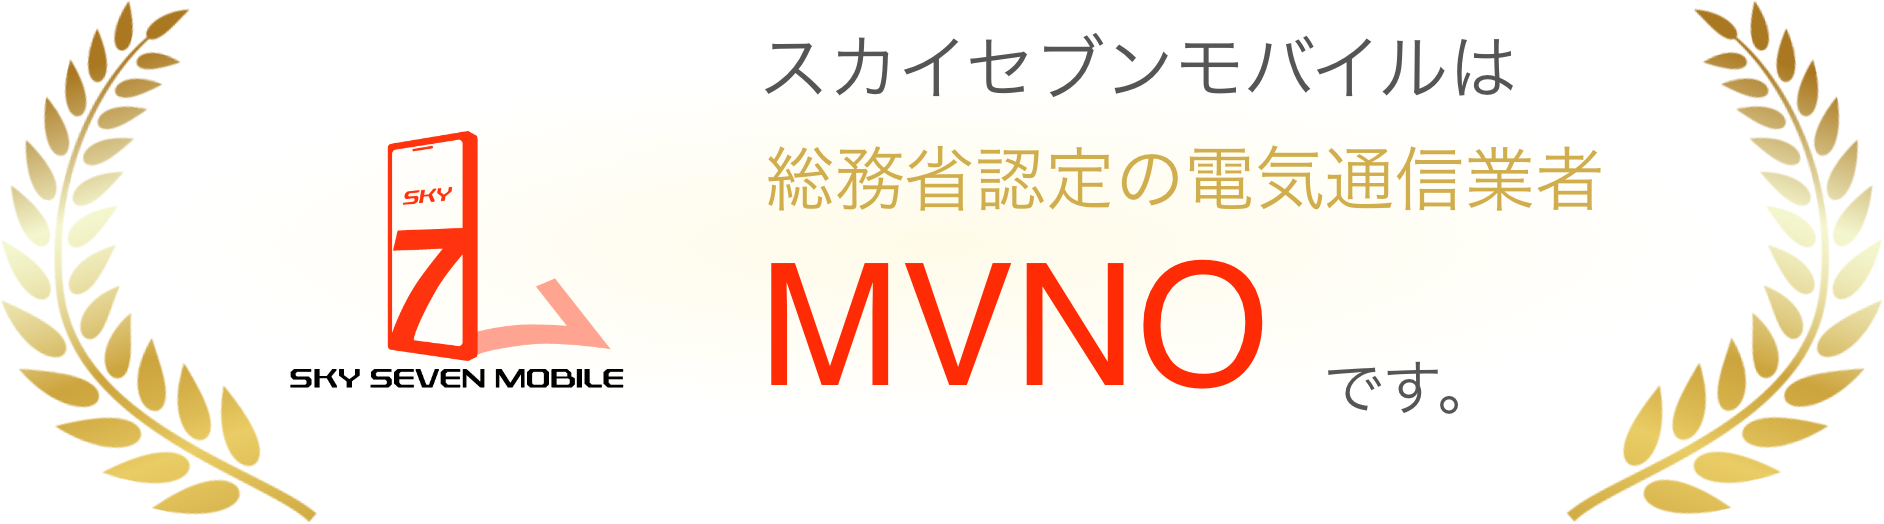 スカイセブンモバイルは総務省認定の電気通信業者MVNOです。